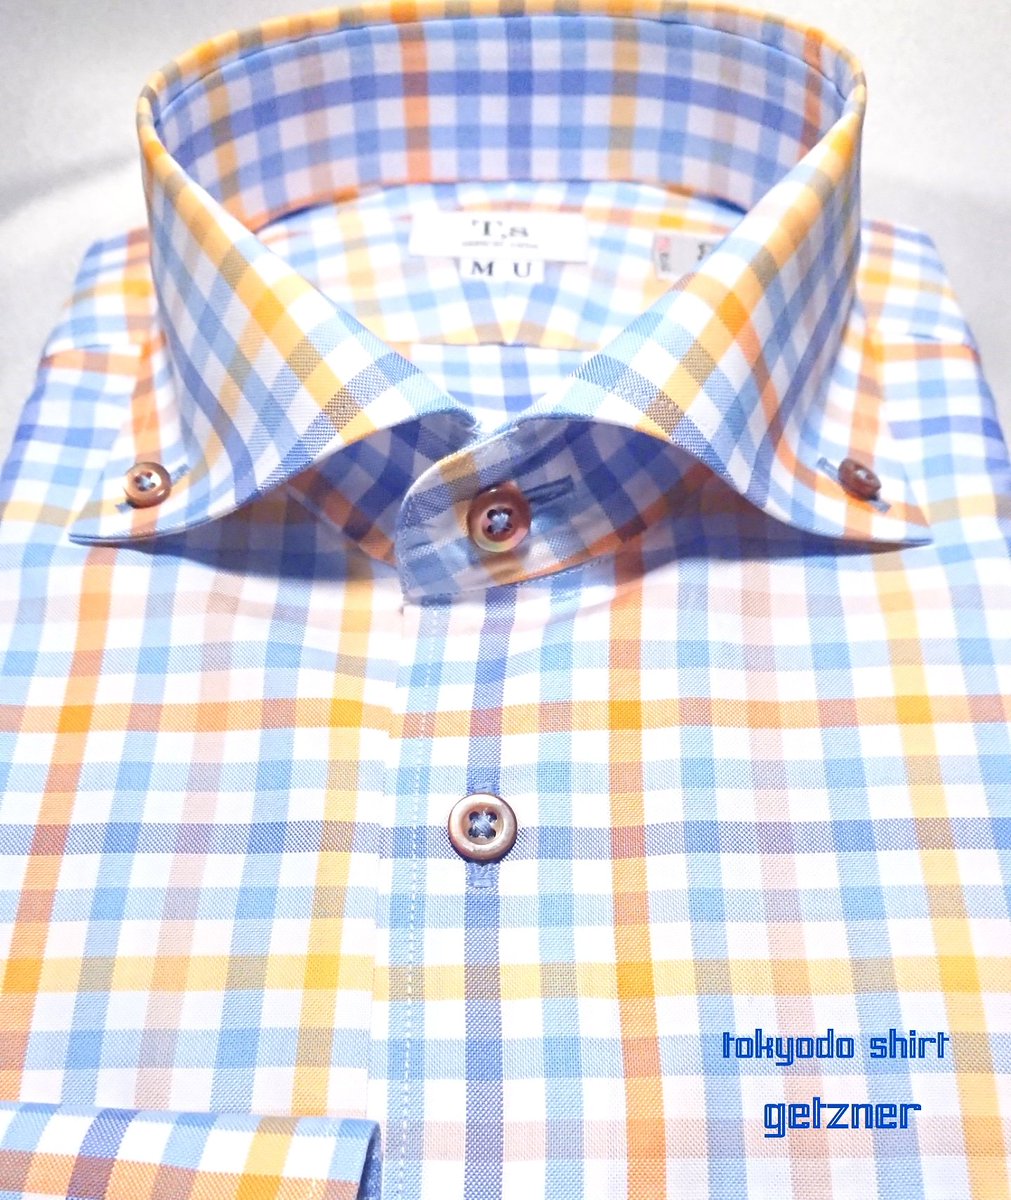 Tokyodo Shirt 東京堂シャツ On Twitter 先日お作り頂いたお客様のシャツ オーストリア のゲッツナーの生地で襟型はカッタウェイボタンダウンになります 最近はカジュアルシャツのオーダーも増えております 東京堂シャツ オーダーシャツ ゲッツナー オーダー